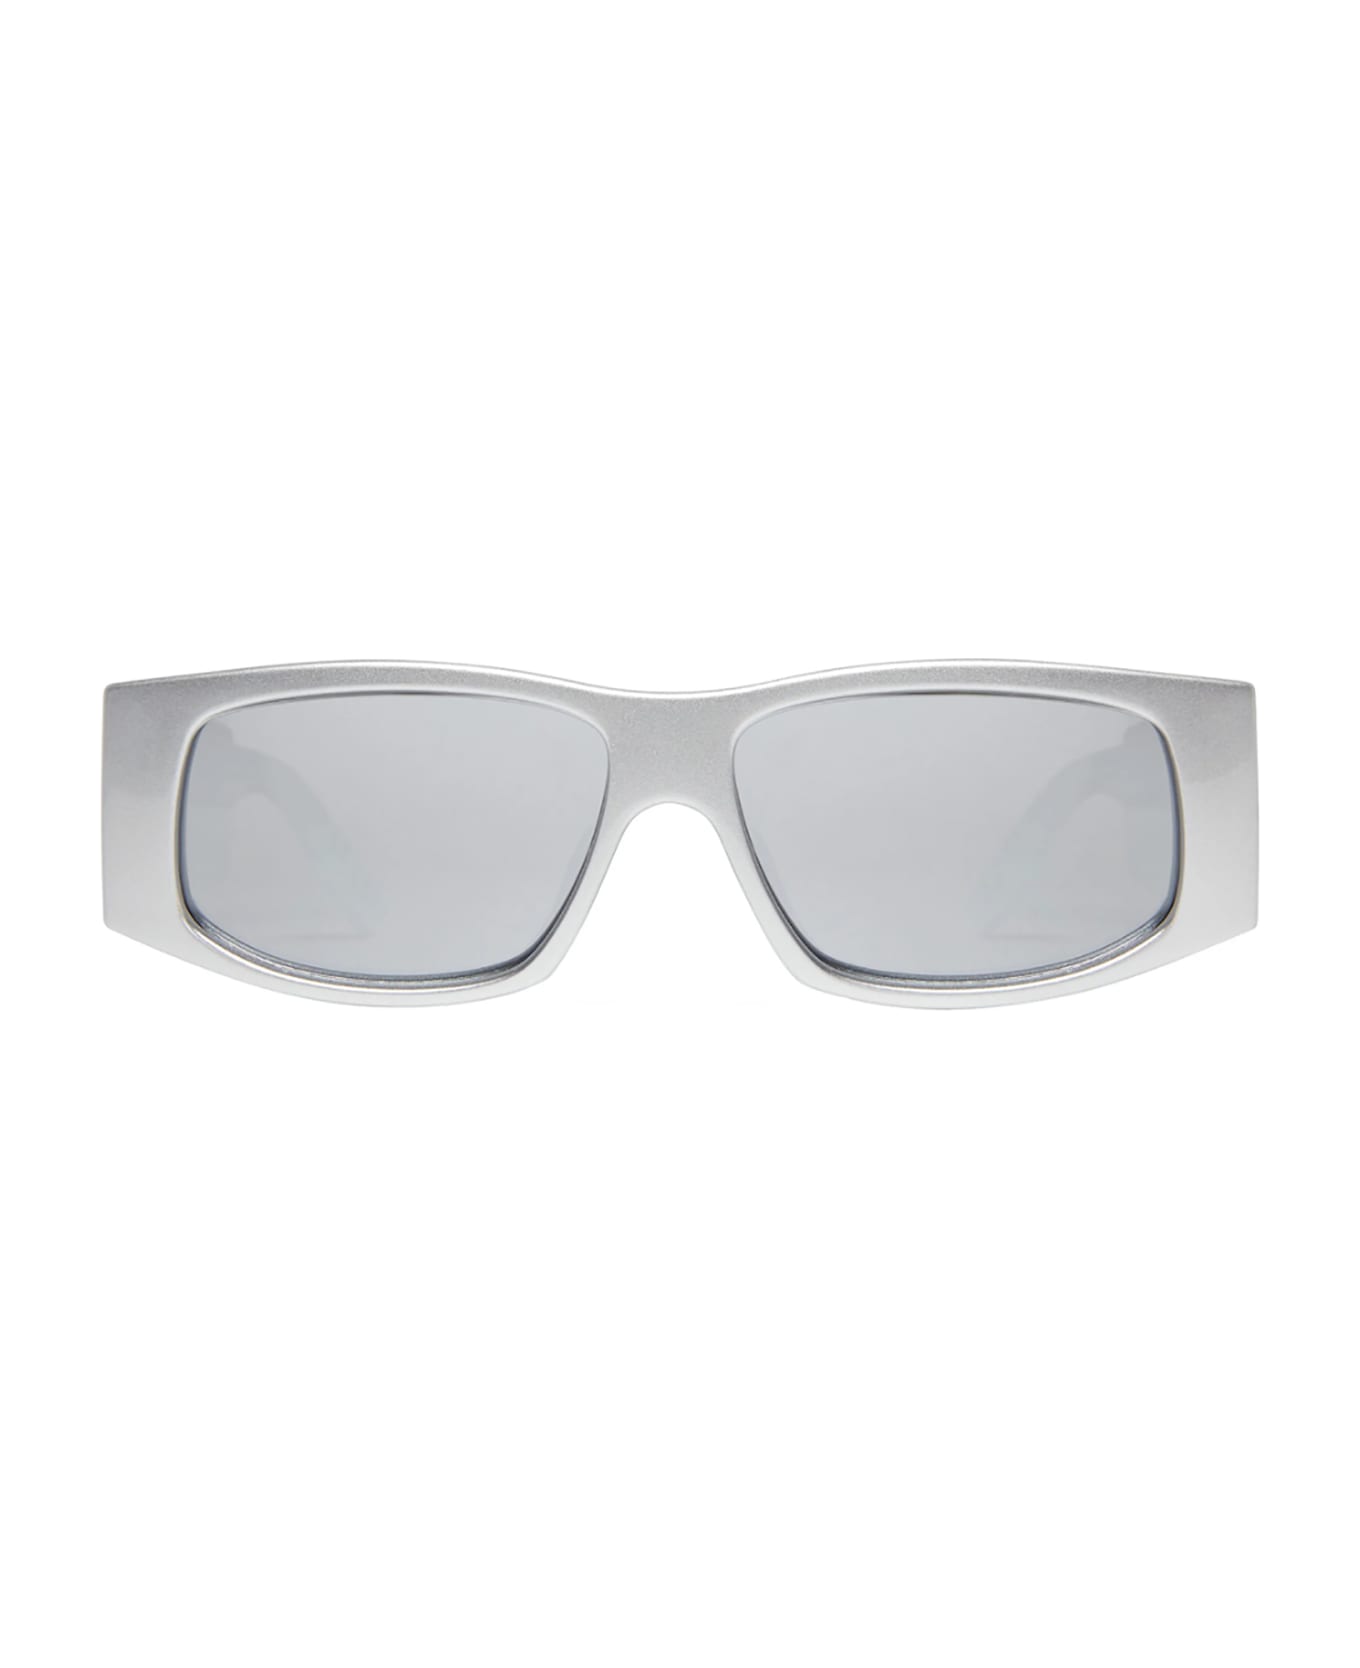 Balenciaga Eyewear BB0100S Sunglasses - Silver Silver Silver